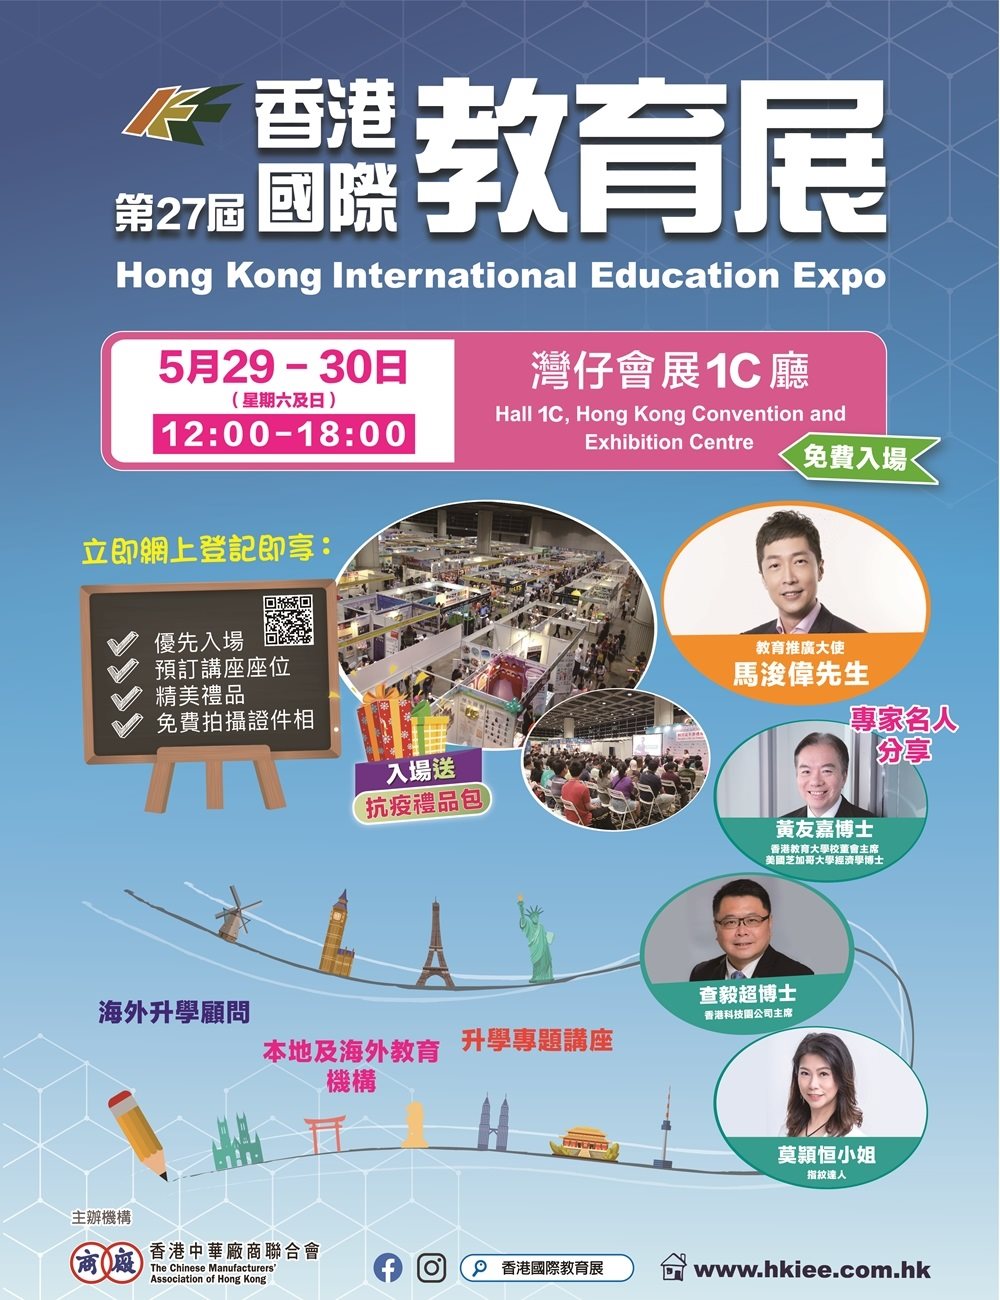 The 27th Hong Kong International Education Expo